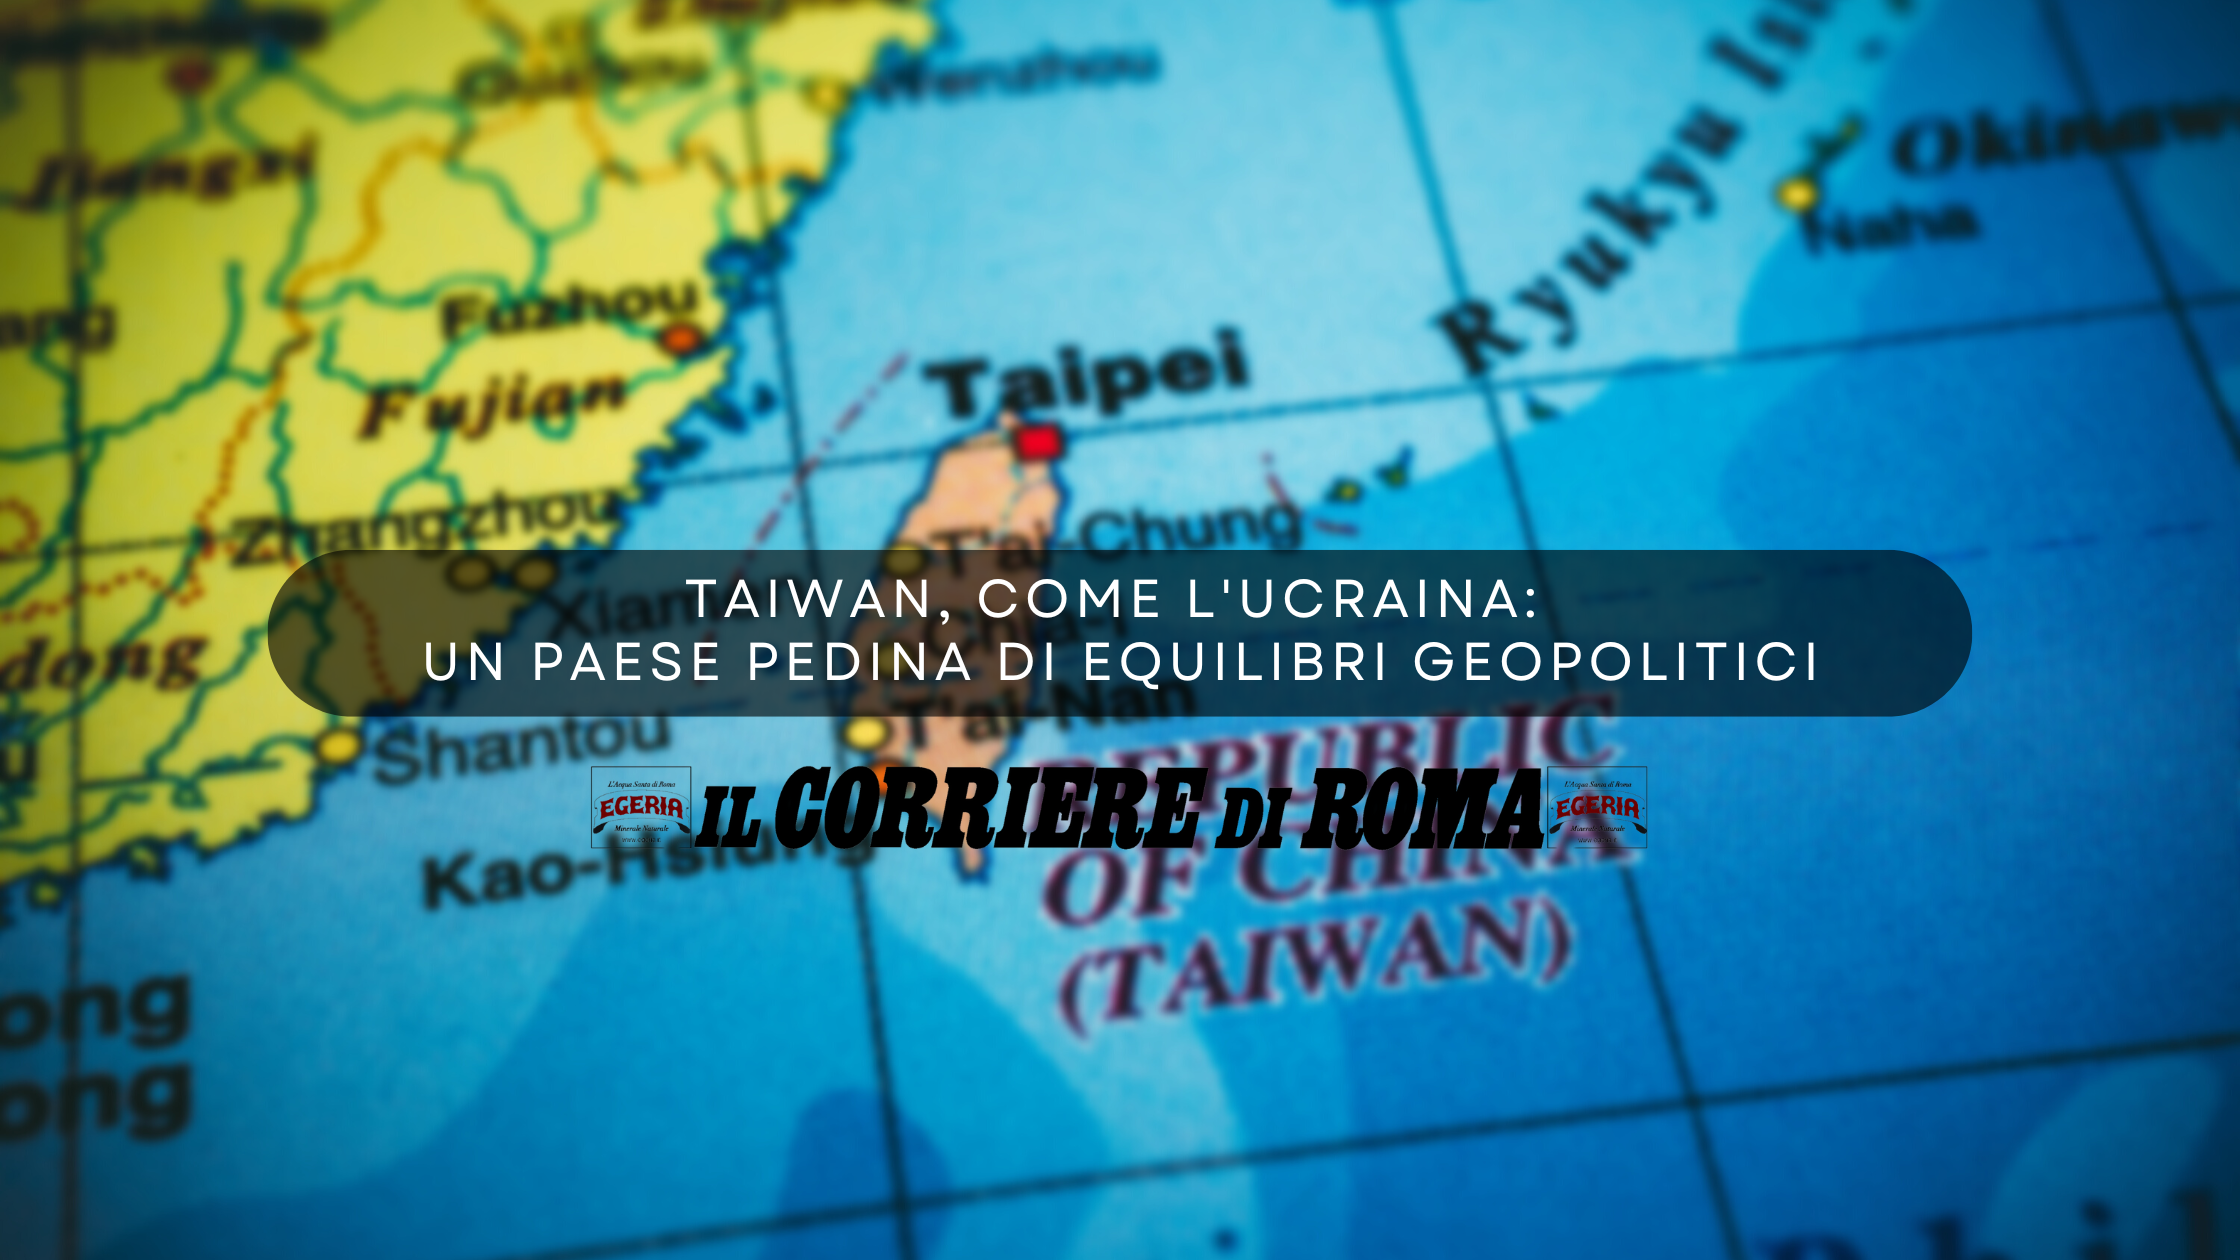 TAIWAN, COME L'UCRAINA UN PAESE PEDINA DI EQUILIBRI GEOPOLITICI